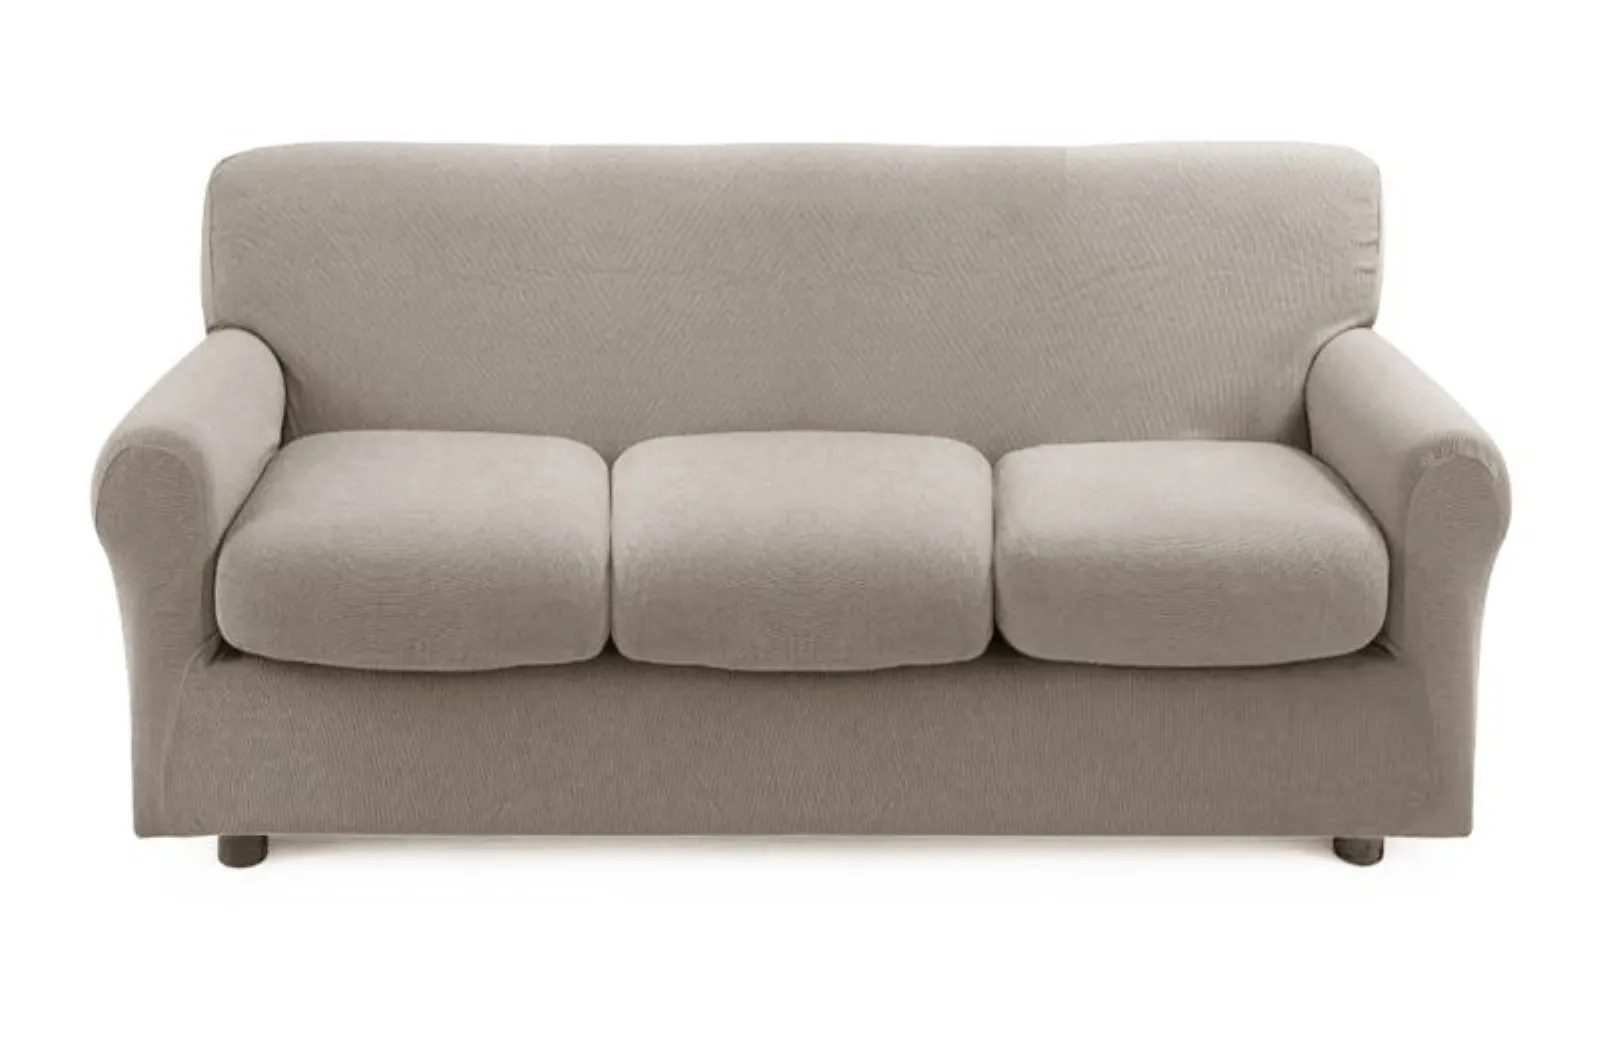 21 tipi differenti di divani e copridivani - Qual è il mio?